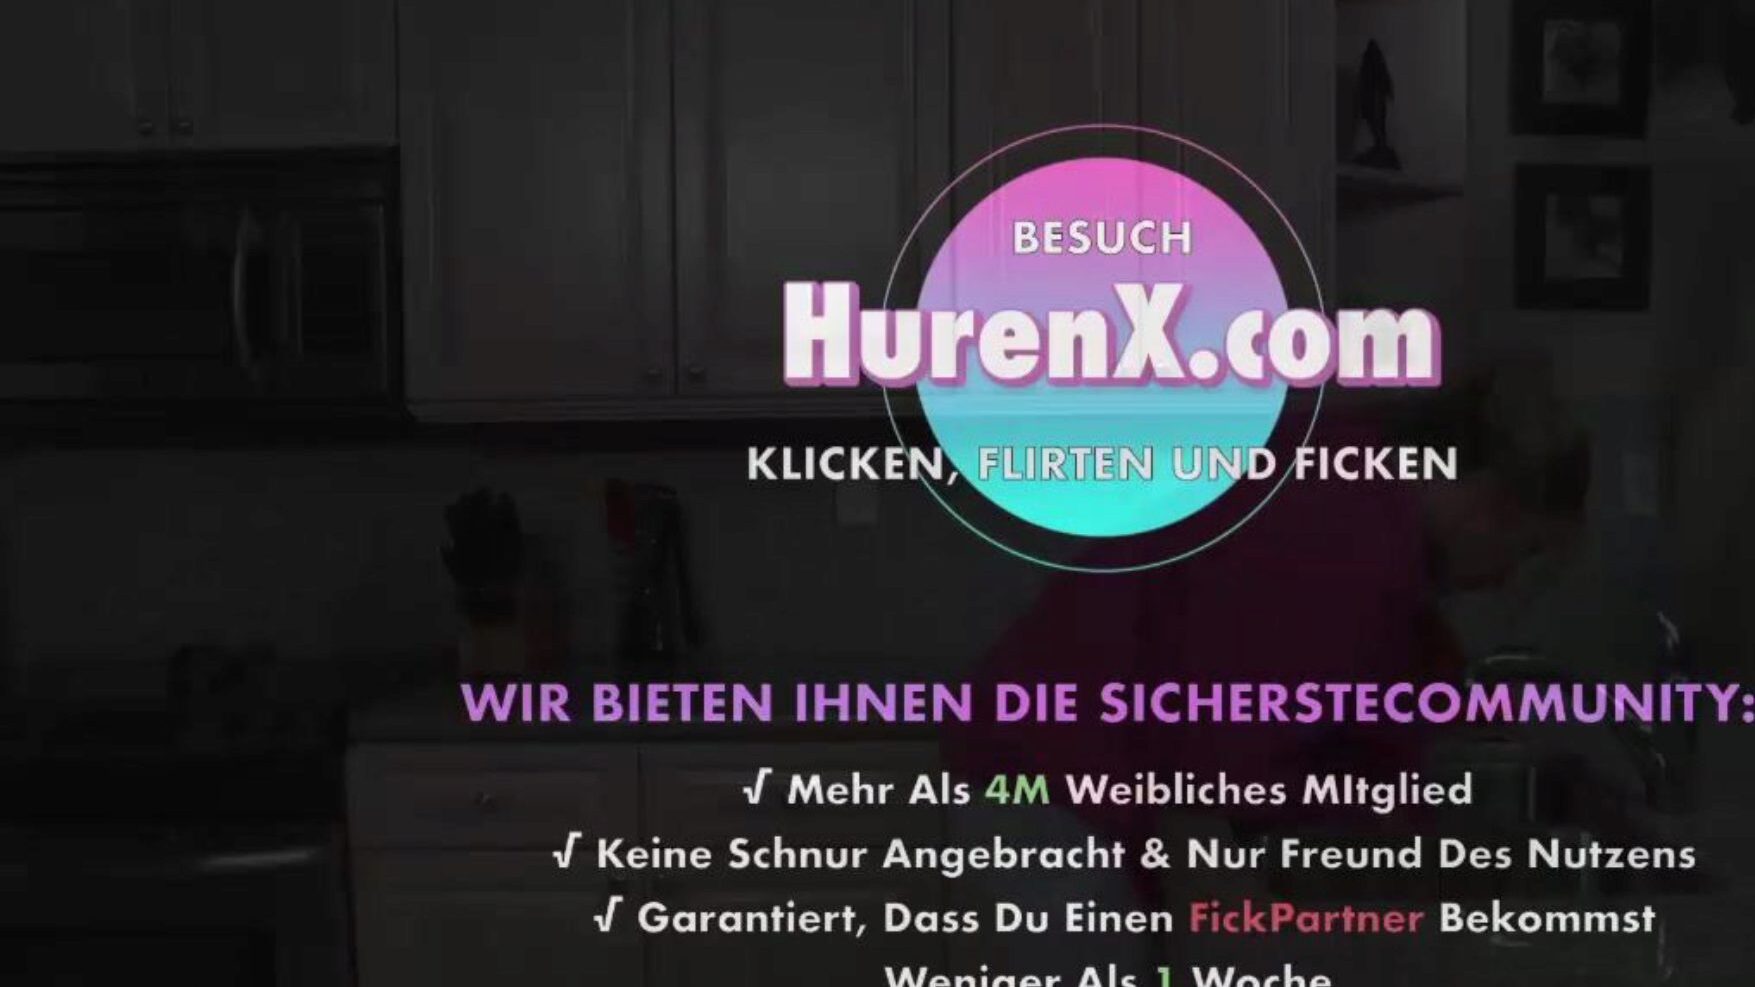 stiefmutter will meine hilfe, gratis xnxc porr b5: xhamster titta på stiefmutter will meine hilfe filmscene på xhamster, den största hd fuck-fest röret webbplats med massor av gratis tyska xnxc & mutter tyska pornografiska klipp